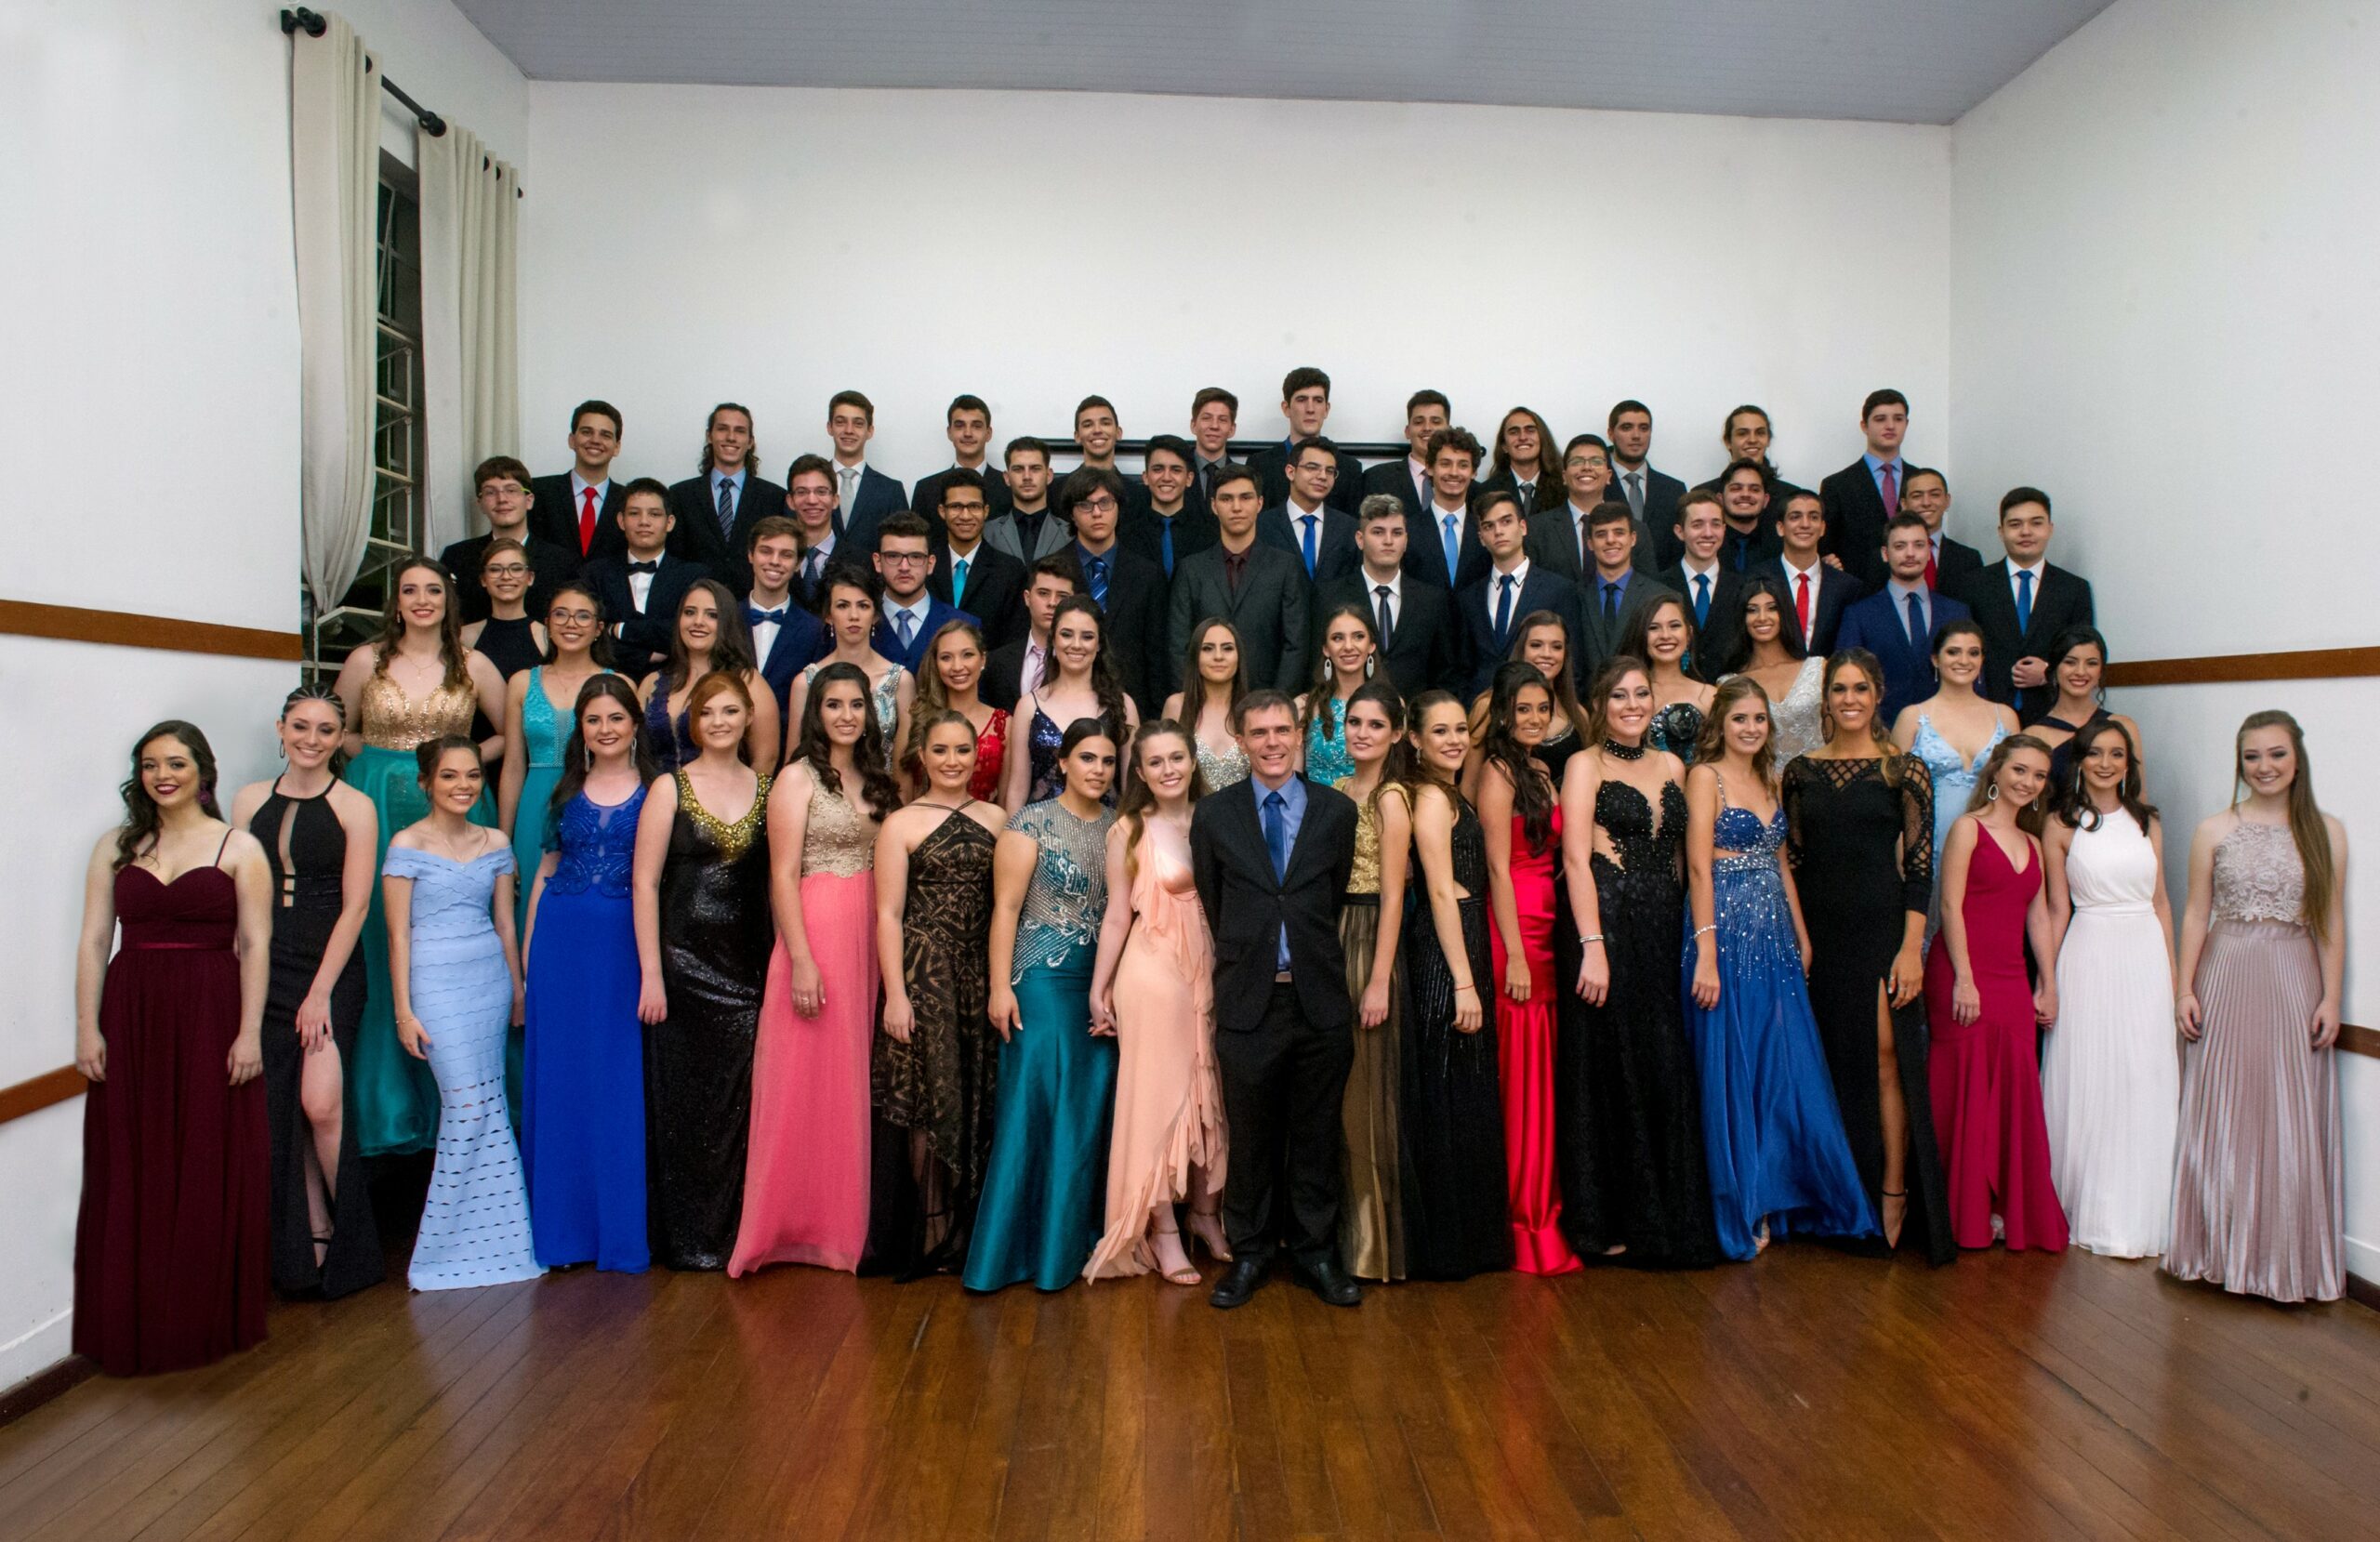 Colégio Koelle entre as 100 melhores escolas do Brasil no ENEM